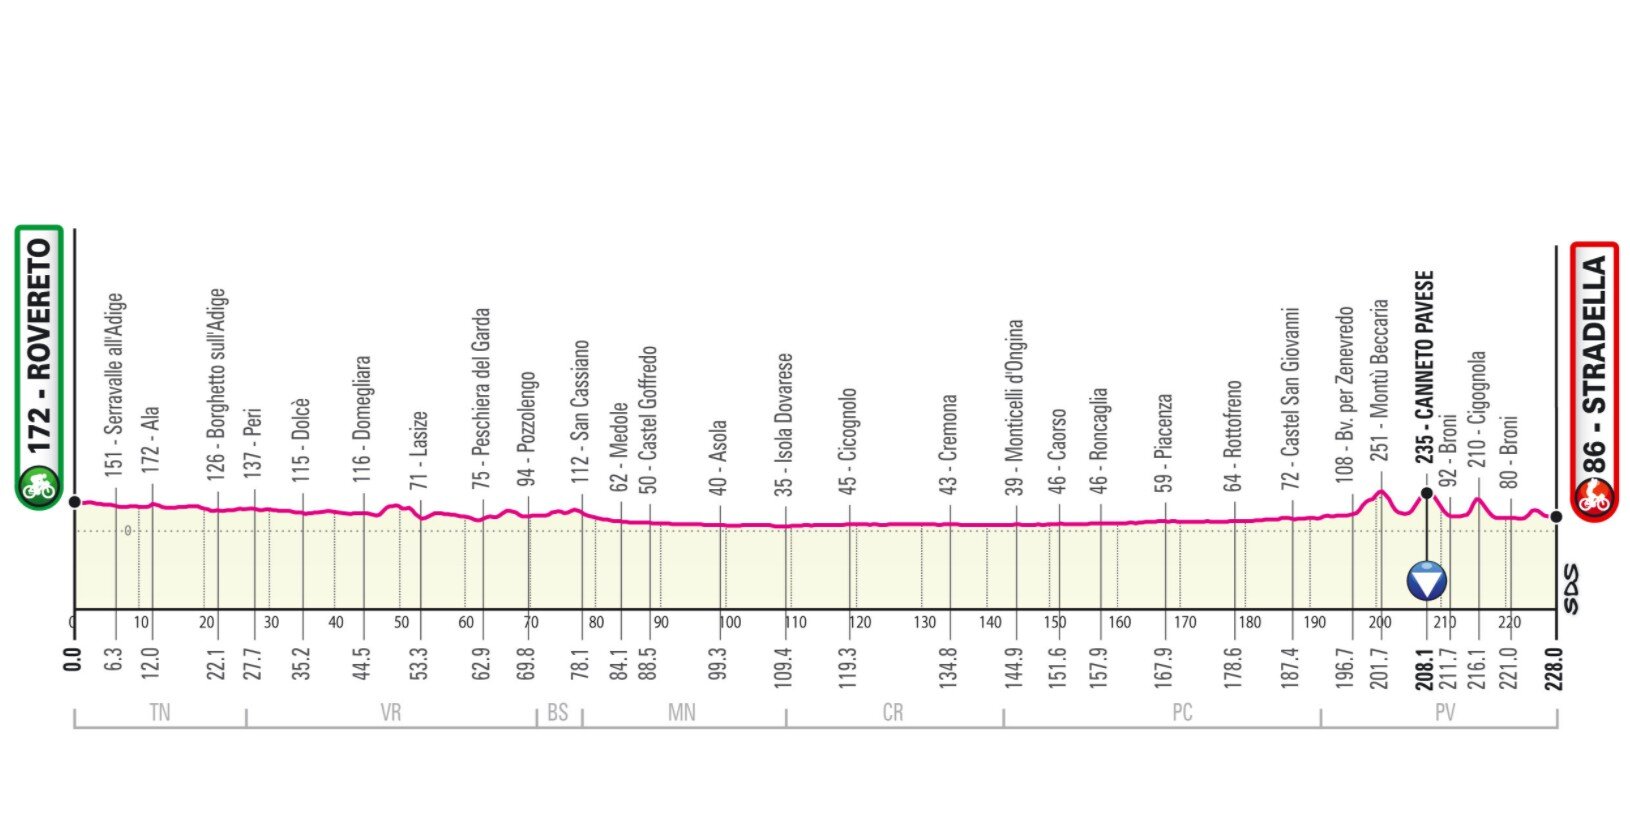 Stage 18 Giro Italia 2021